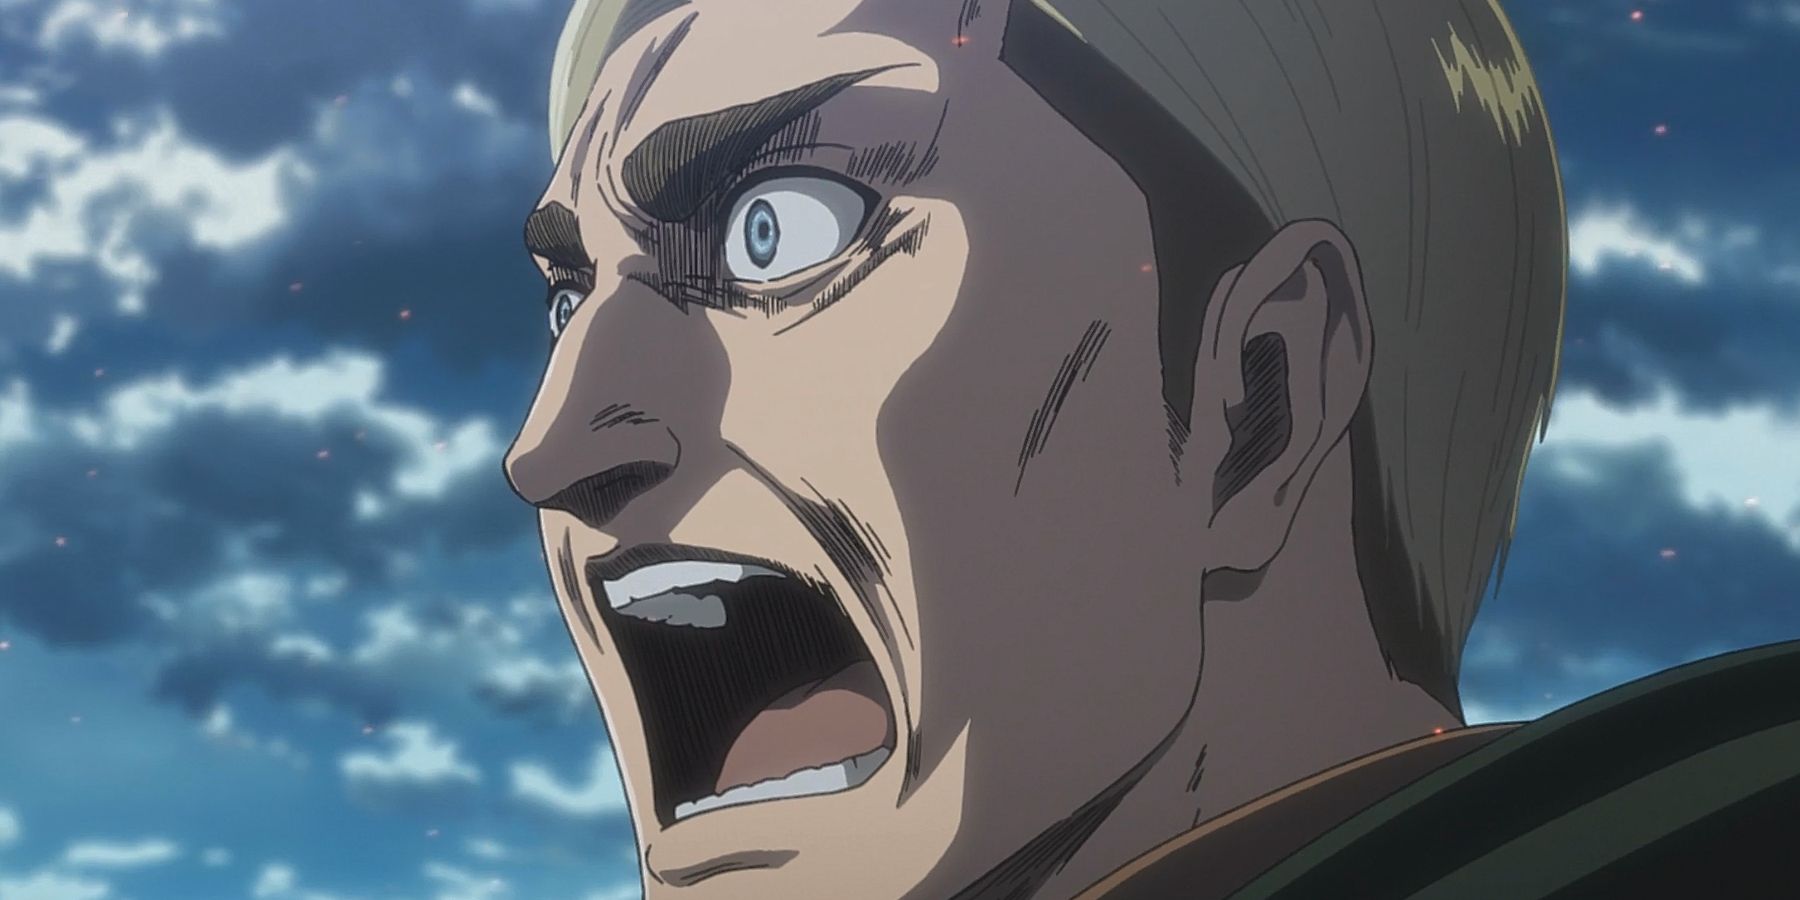 Erwin screaming